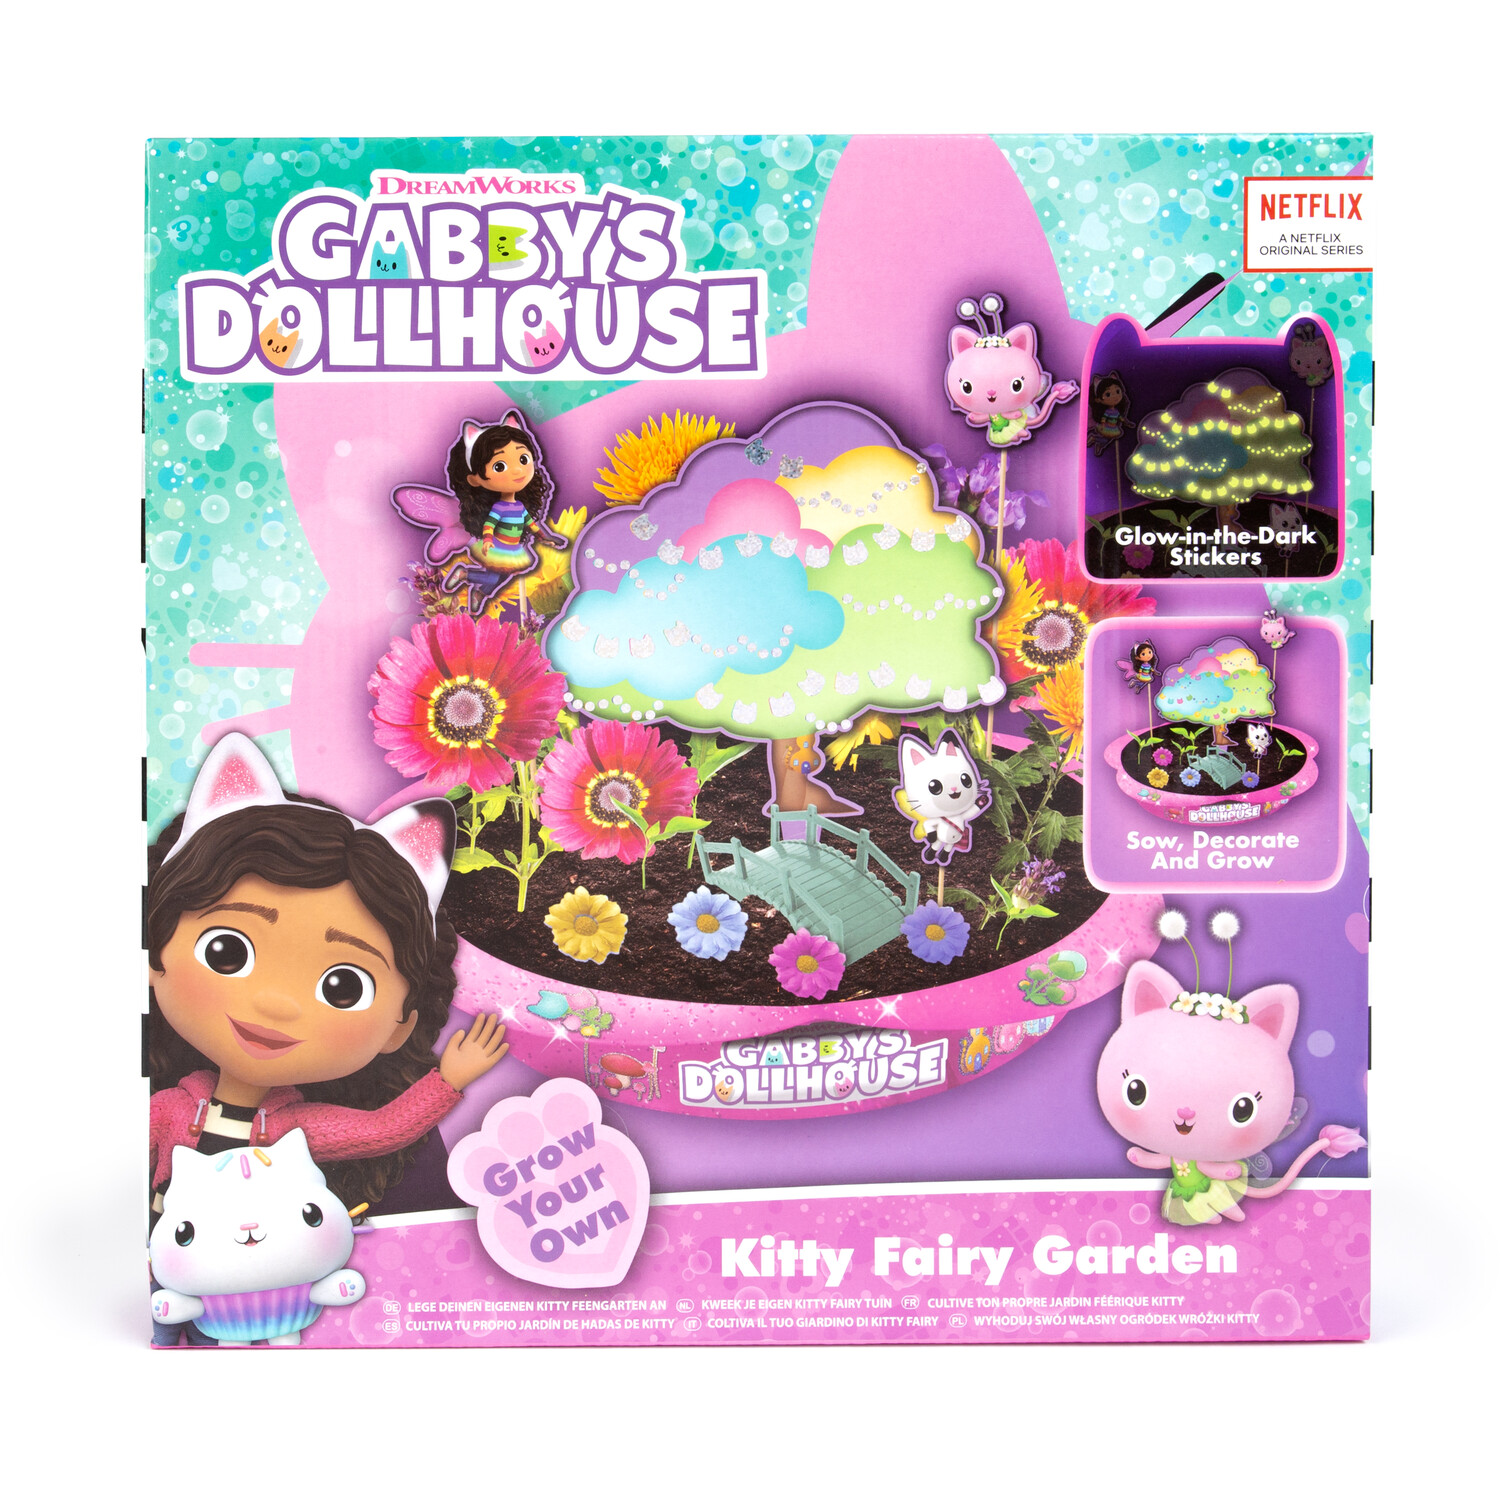 Gabby's Dollhouse Grow Your Own Kitty Fairy Garden Image 5